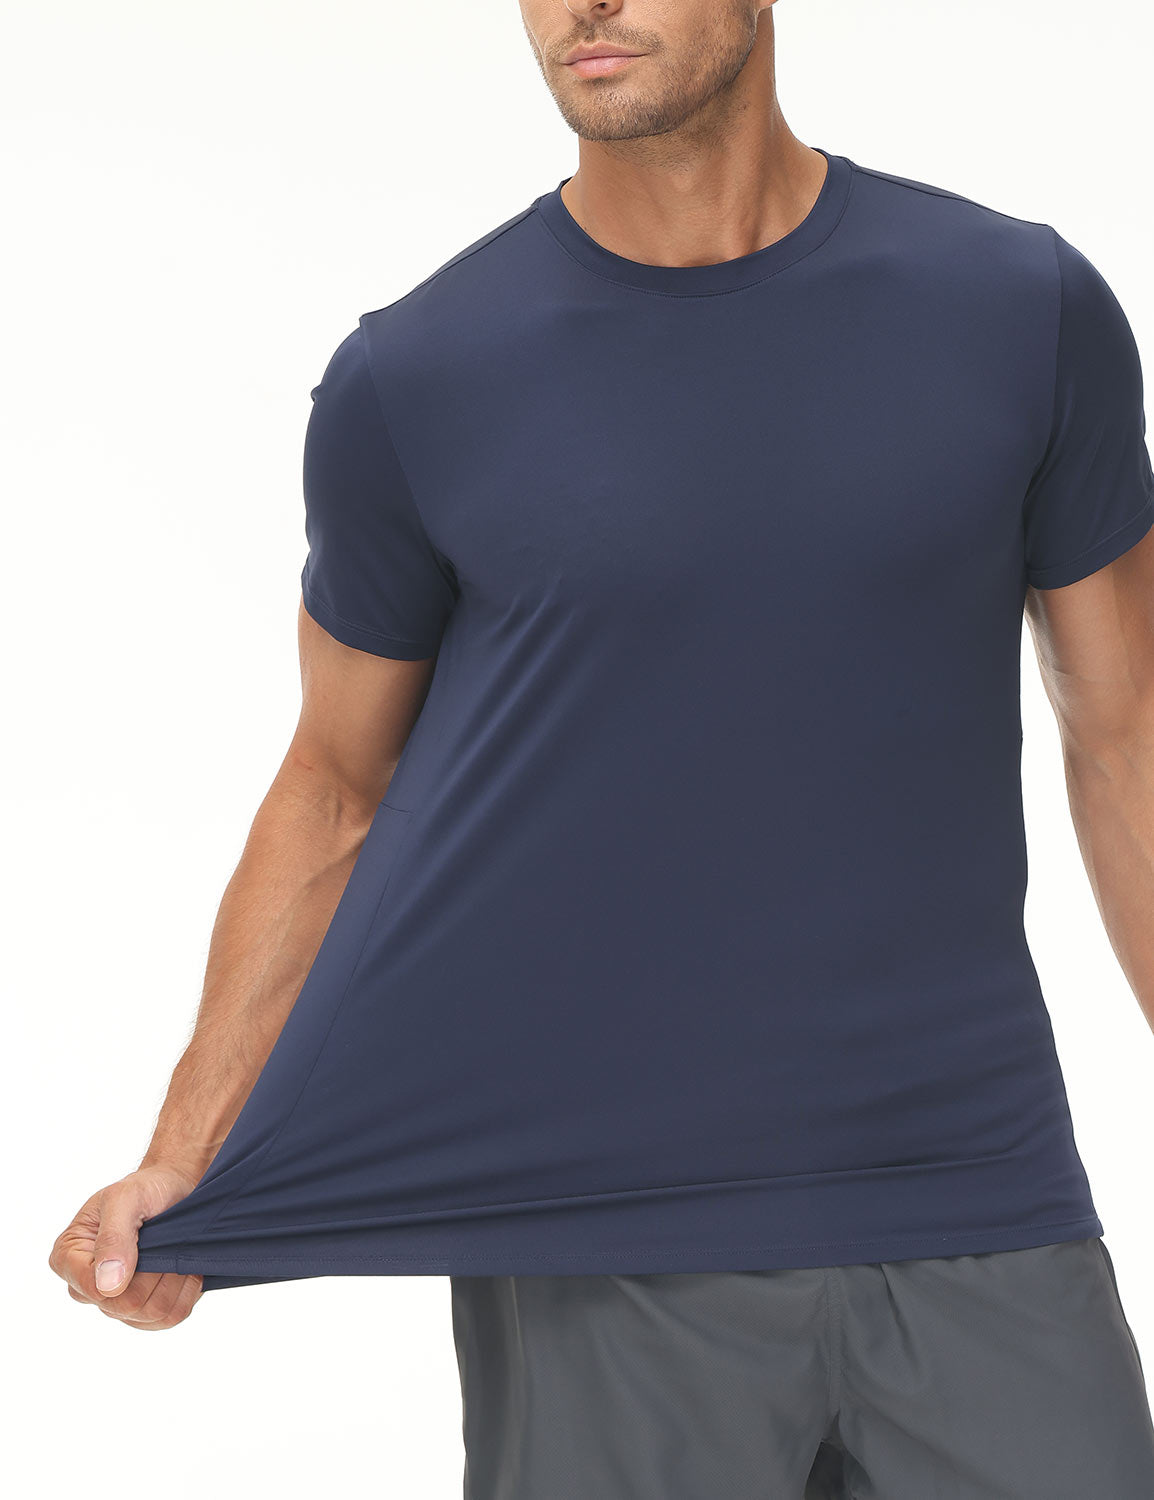 Baleaf Men's Fitted Crew Neck Short Sleeve T-shirts Dark Sapphire Details